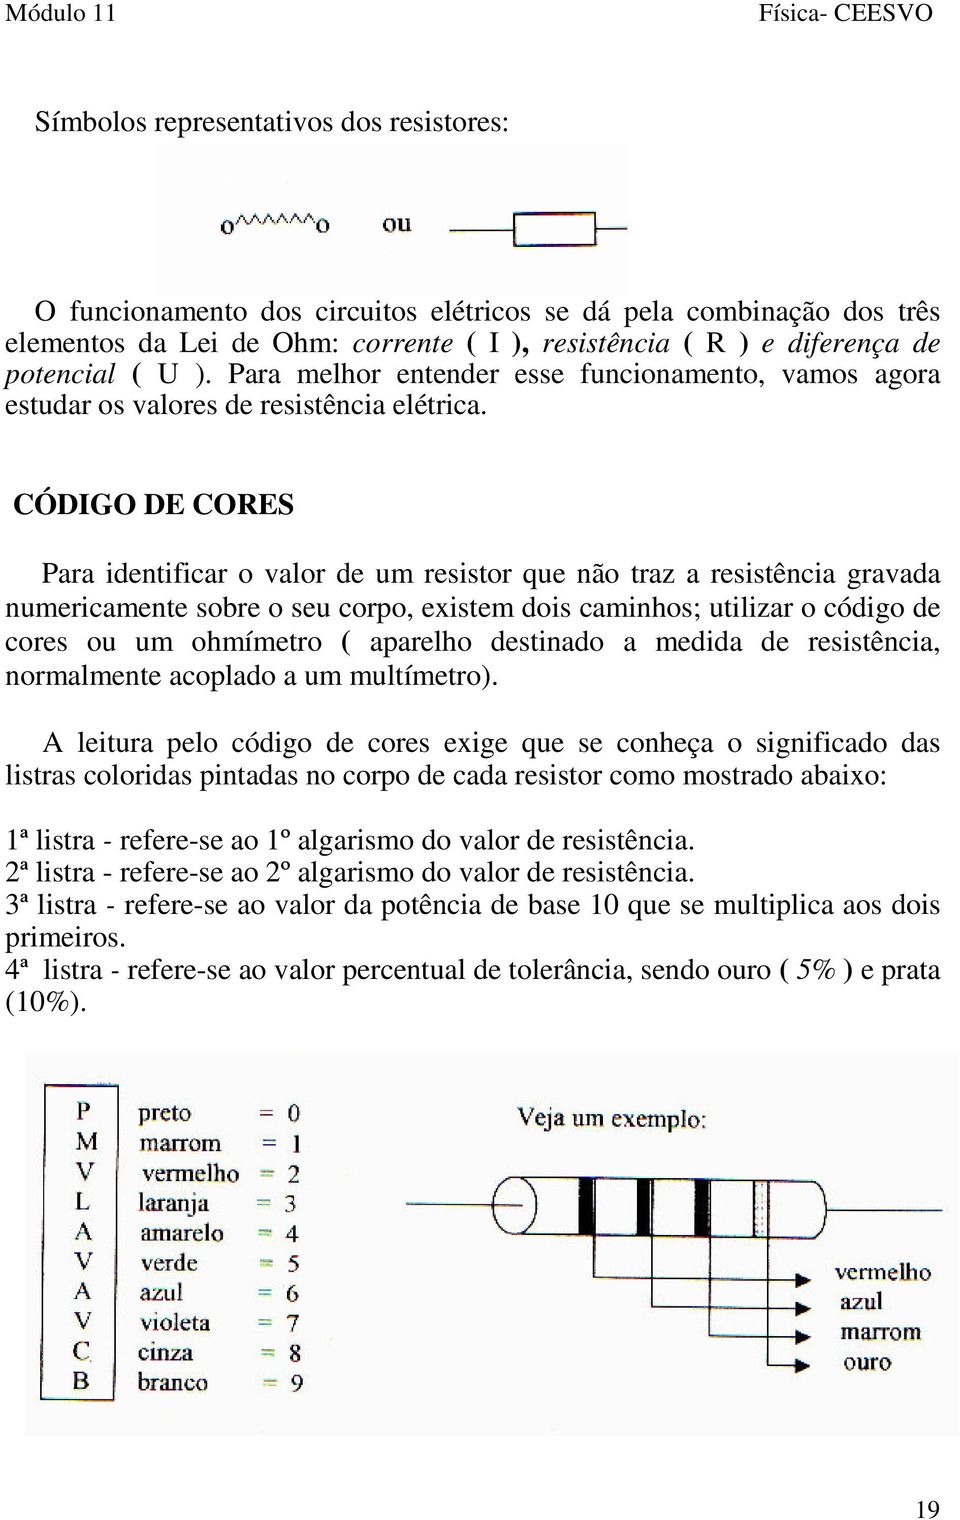 CÓDIGO DE CORES Para identificar o valor de um resistor que não traz a resistência gravada numericamente sobre o seu corpo, existem dois caminhos; utilizar o código de cores ou um ohmímetro (